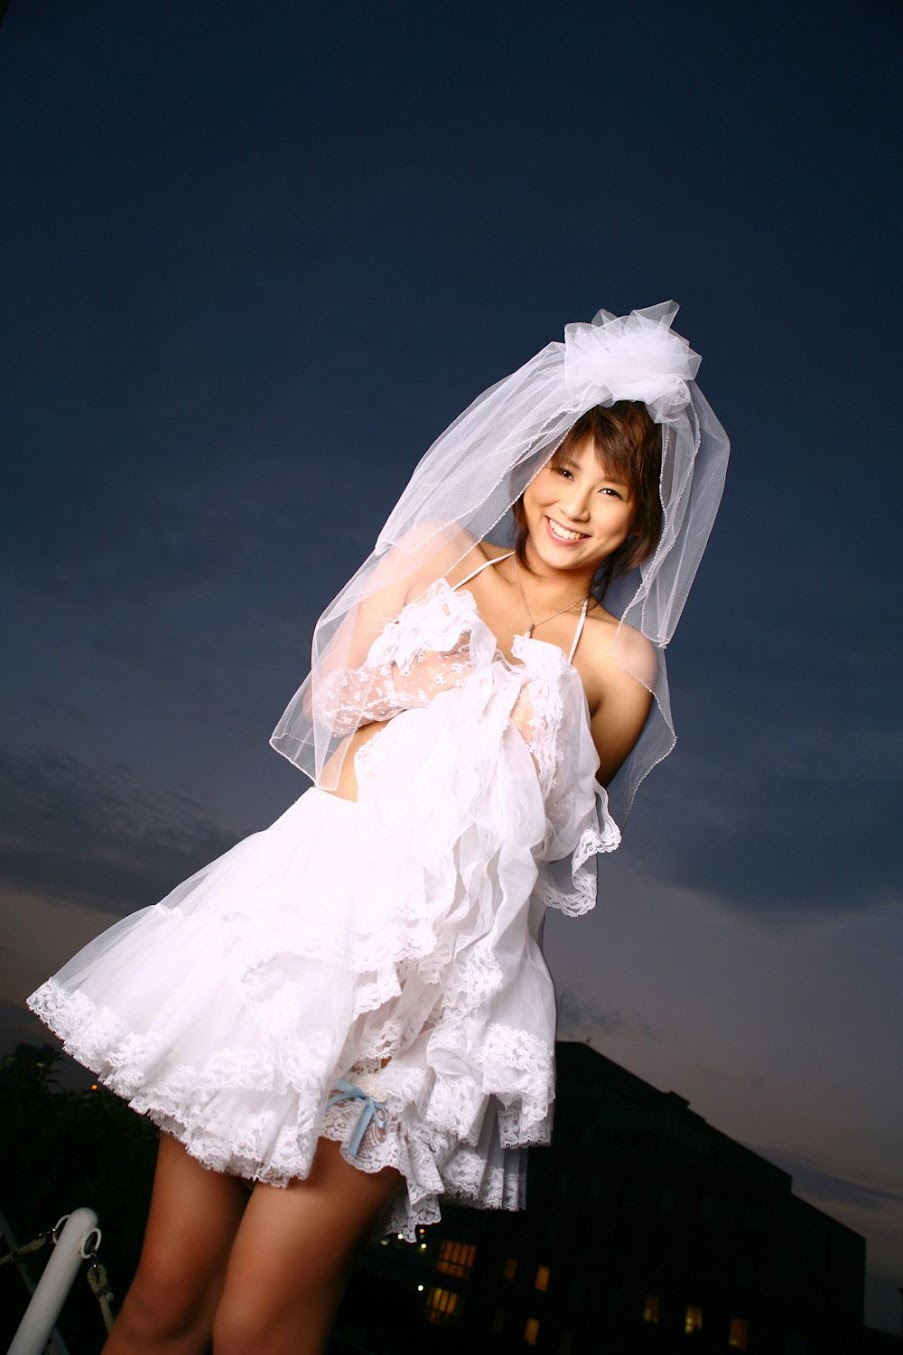 Yuka Kosaka - Japanese gravure idol, actress and model